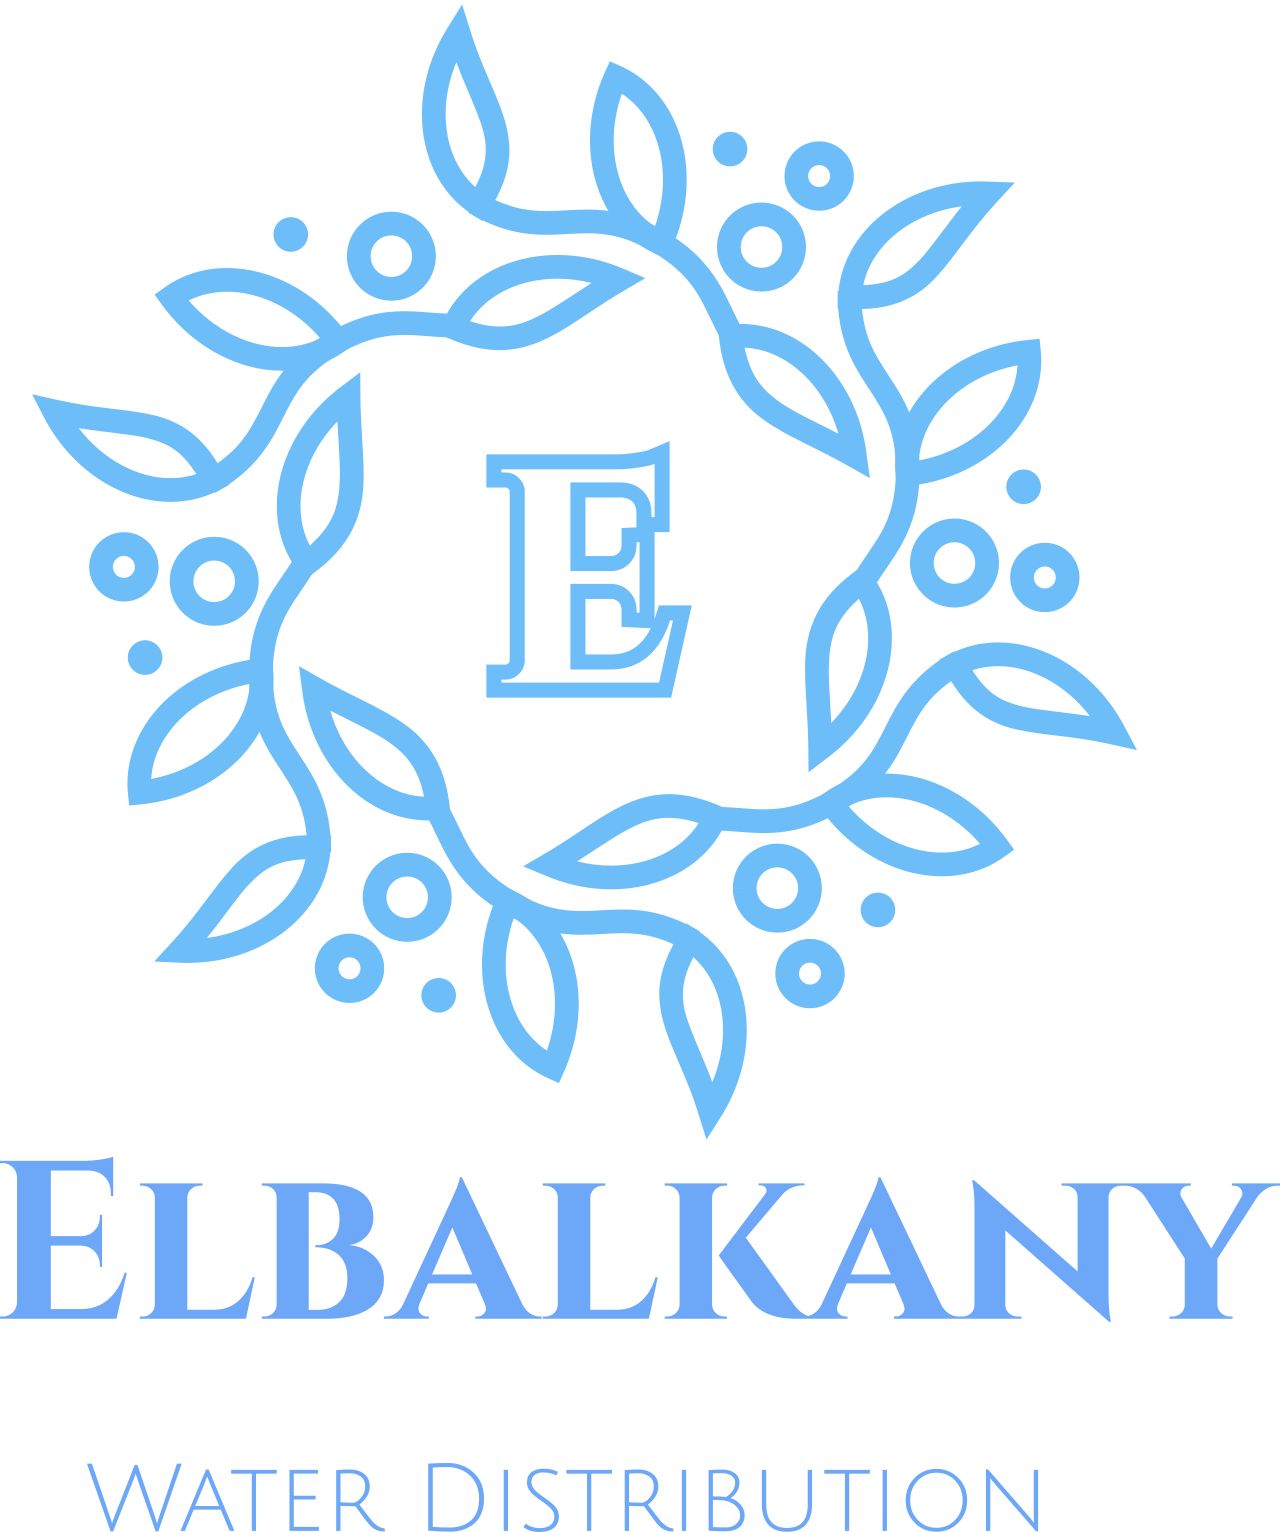 Elbalkany 's logo